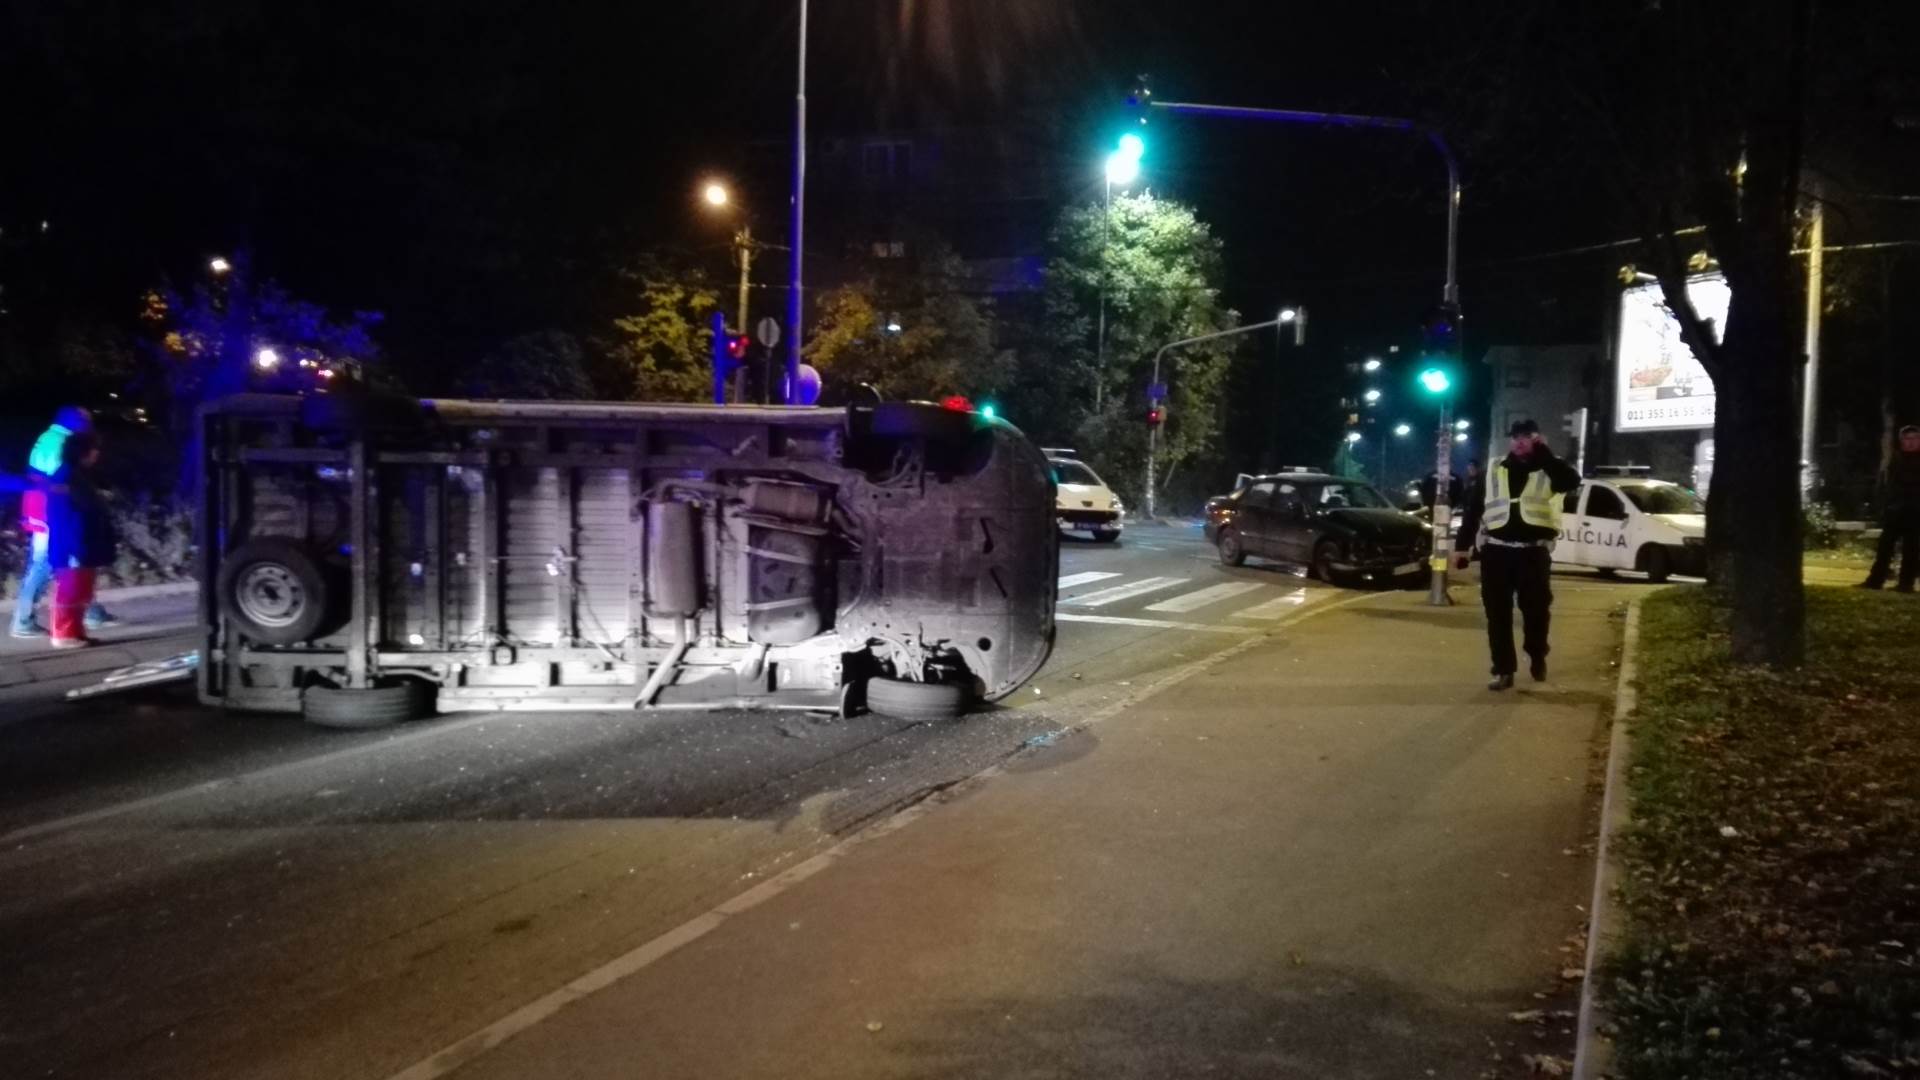  Beograd - Udes na Topčideru - devojka udarila u autobus  